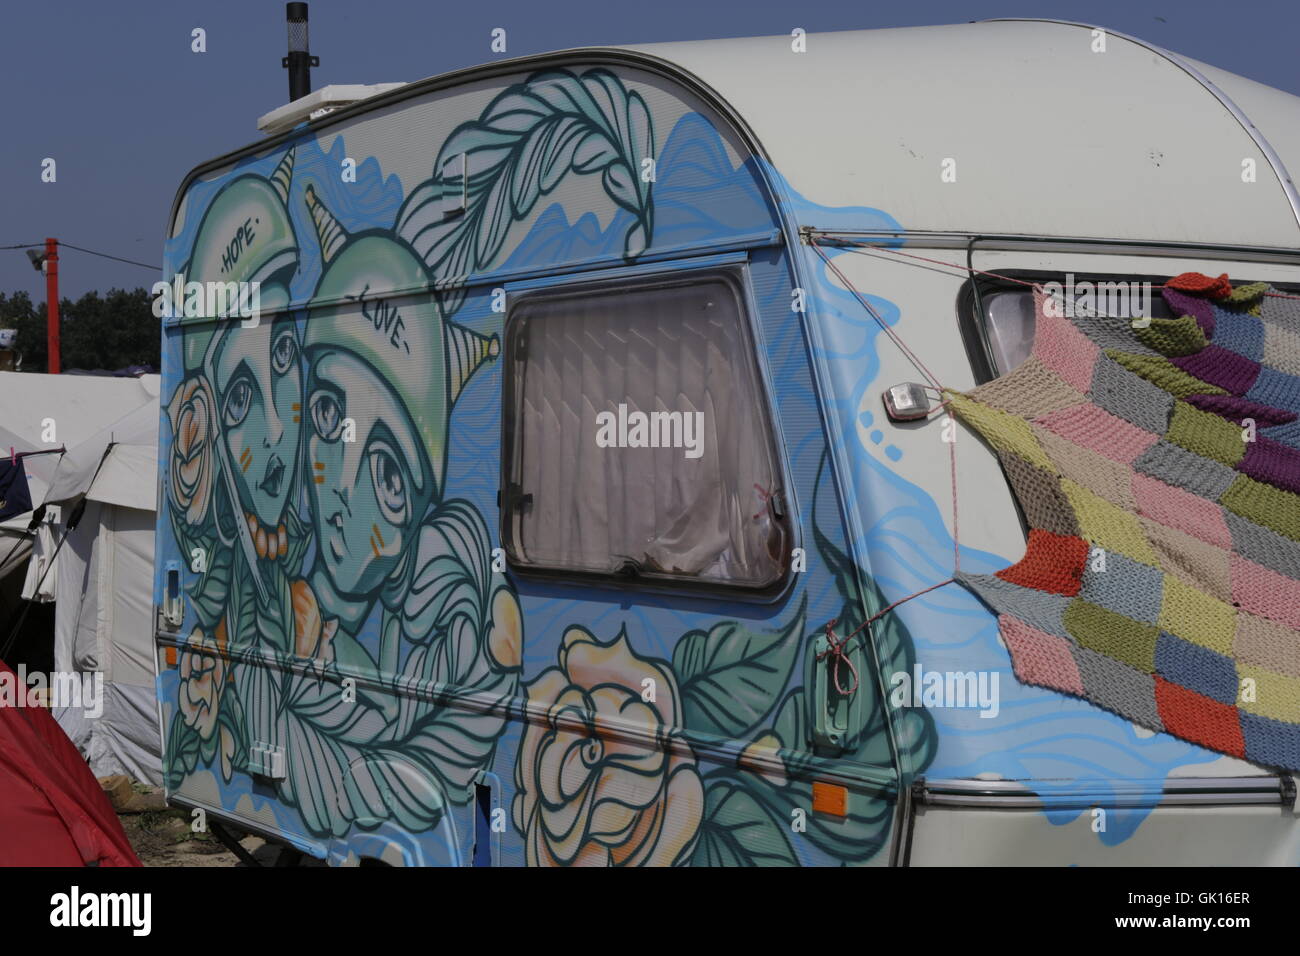 Calais, France. Août 17, 2016. Une caravane est peint avec art, représentant l'espoir et l'amour de ses habitants. Plus de 9 000 réfugiés vivent dans le camp de réfugiés de Calais, appelé la Jungle. Ils sont tous sur leur chemin vers le Royaume-Uni et sont bloqués ici, que la Manche est très surveillée par la police française et anglaise ainsi que des clôtures et des barbelés. Crédit : Michael Debets/Pacific Press/Alamy Live News Banque D'Images